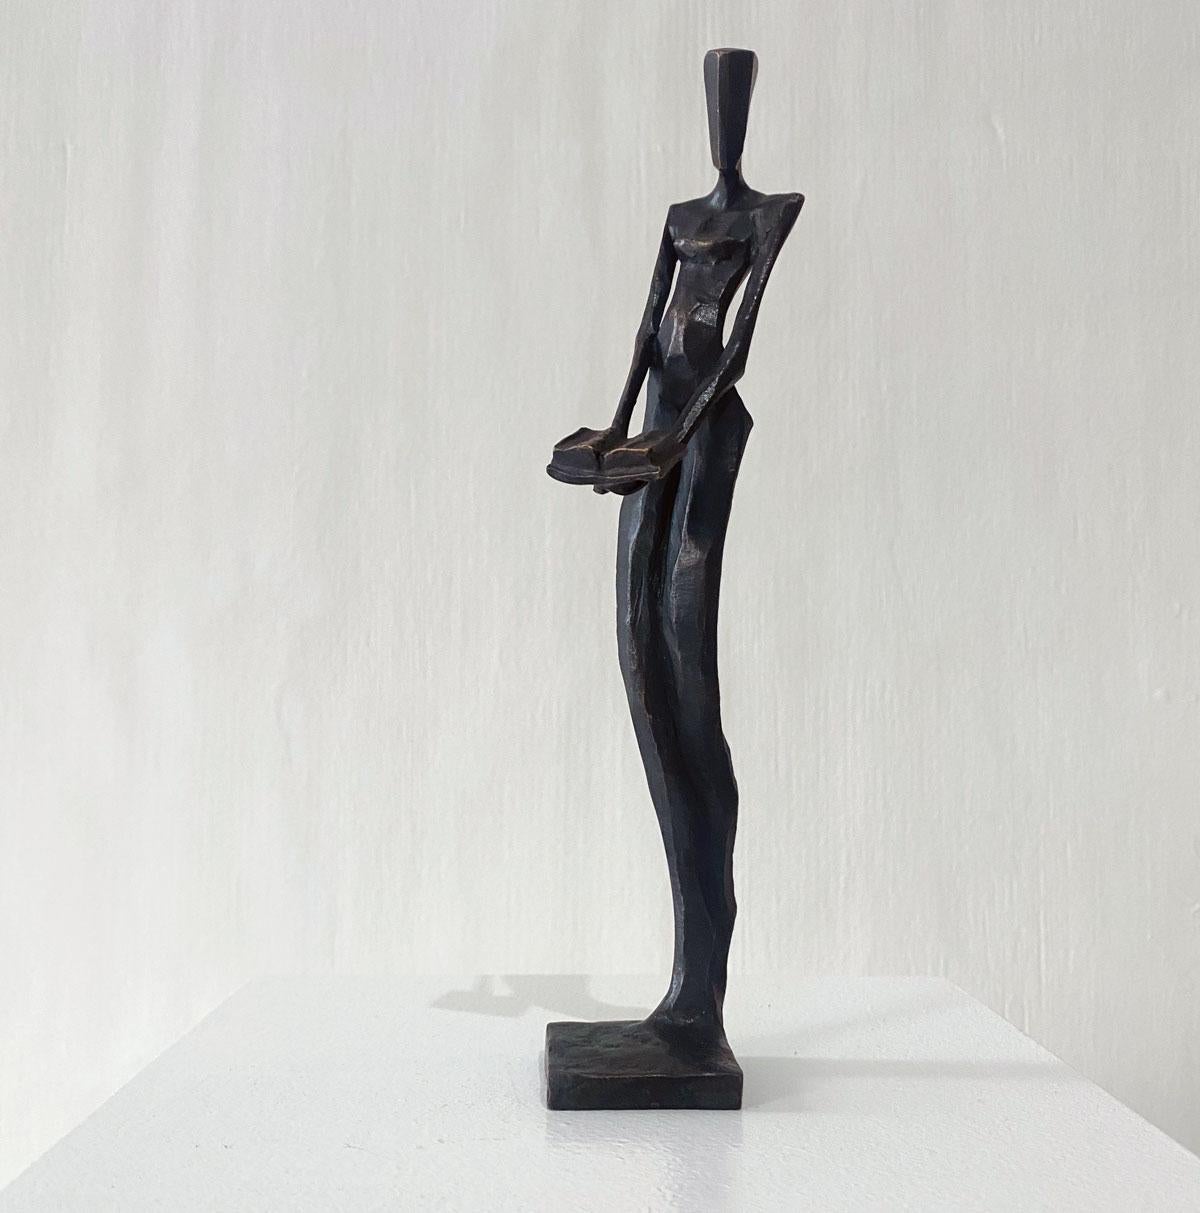 Frau mit Buch ist eine elegante figurative Bronzeskulptur von Nando Kallweit.

Der stilisierte ägyptisch angehauchte Kopf ist der modernen jugendlichen Haltung nachempfunden, verweist aber auch auf die Bedeutung des Erbes. Ein schönes Stück für sich